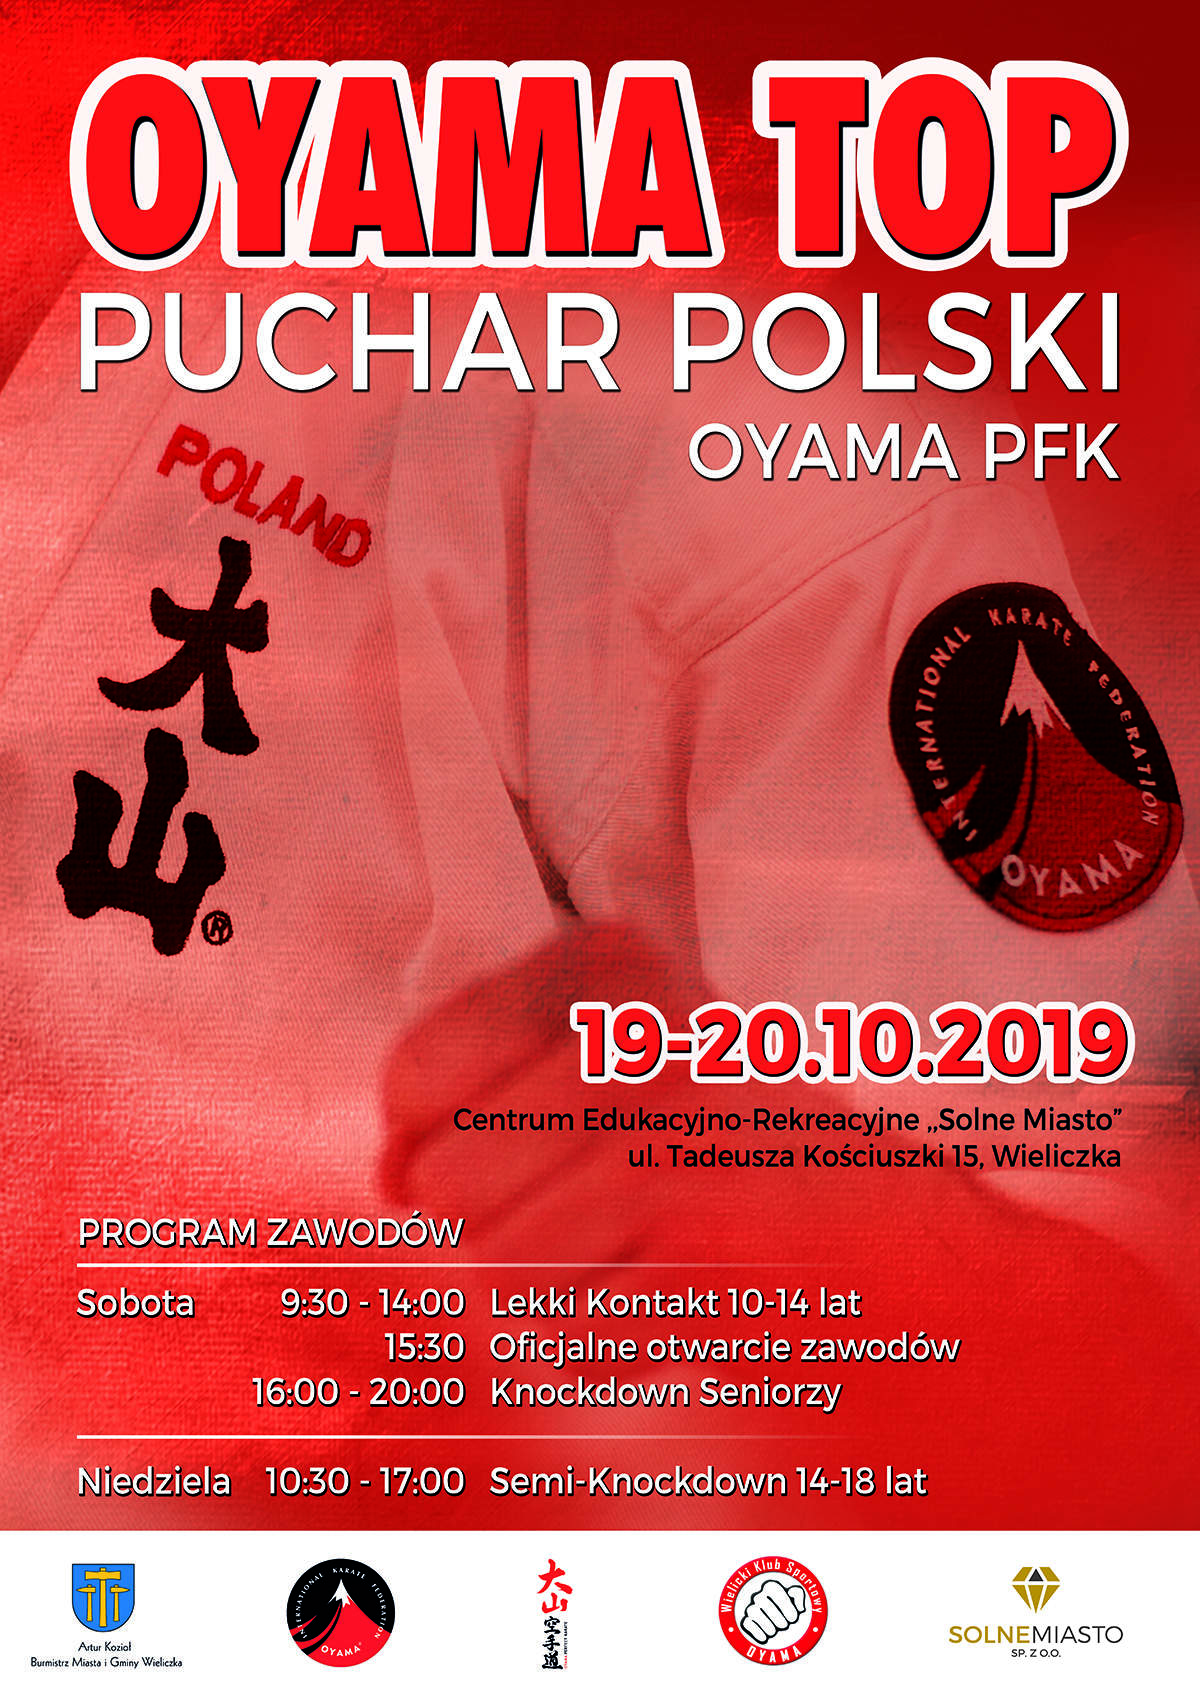 Puchar Polski OYAMA TOP (19-20.10.2019r.)